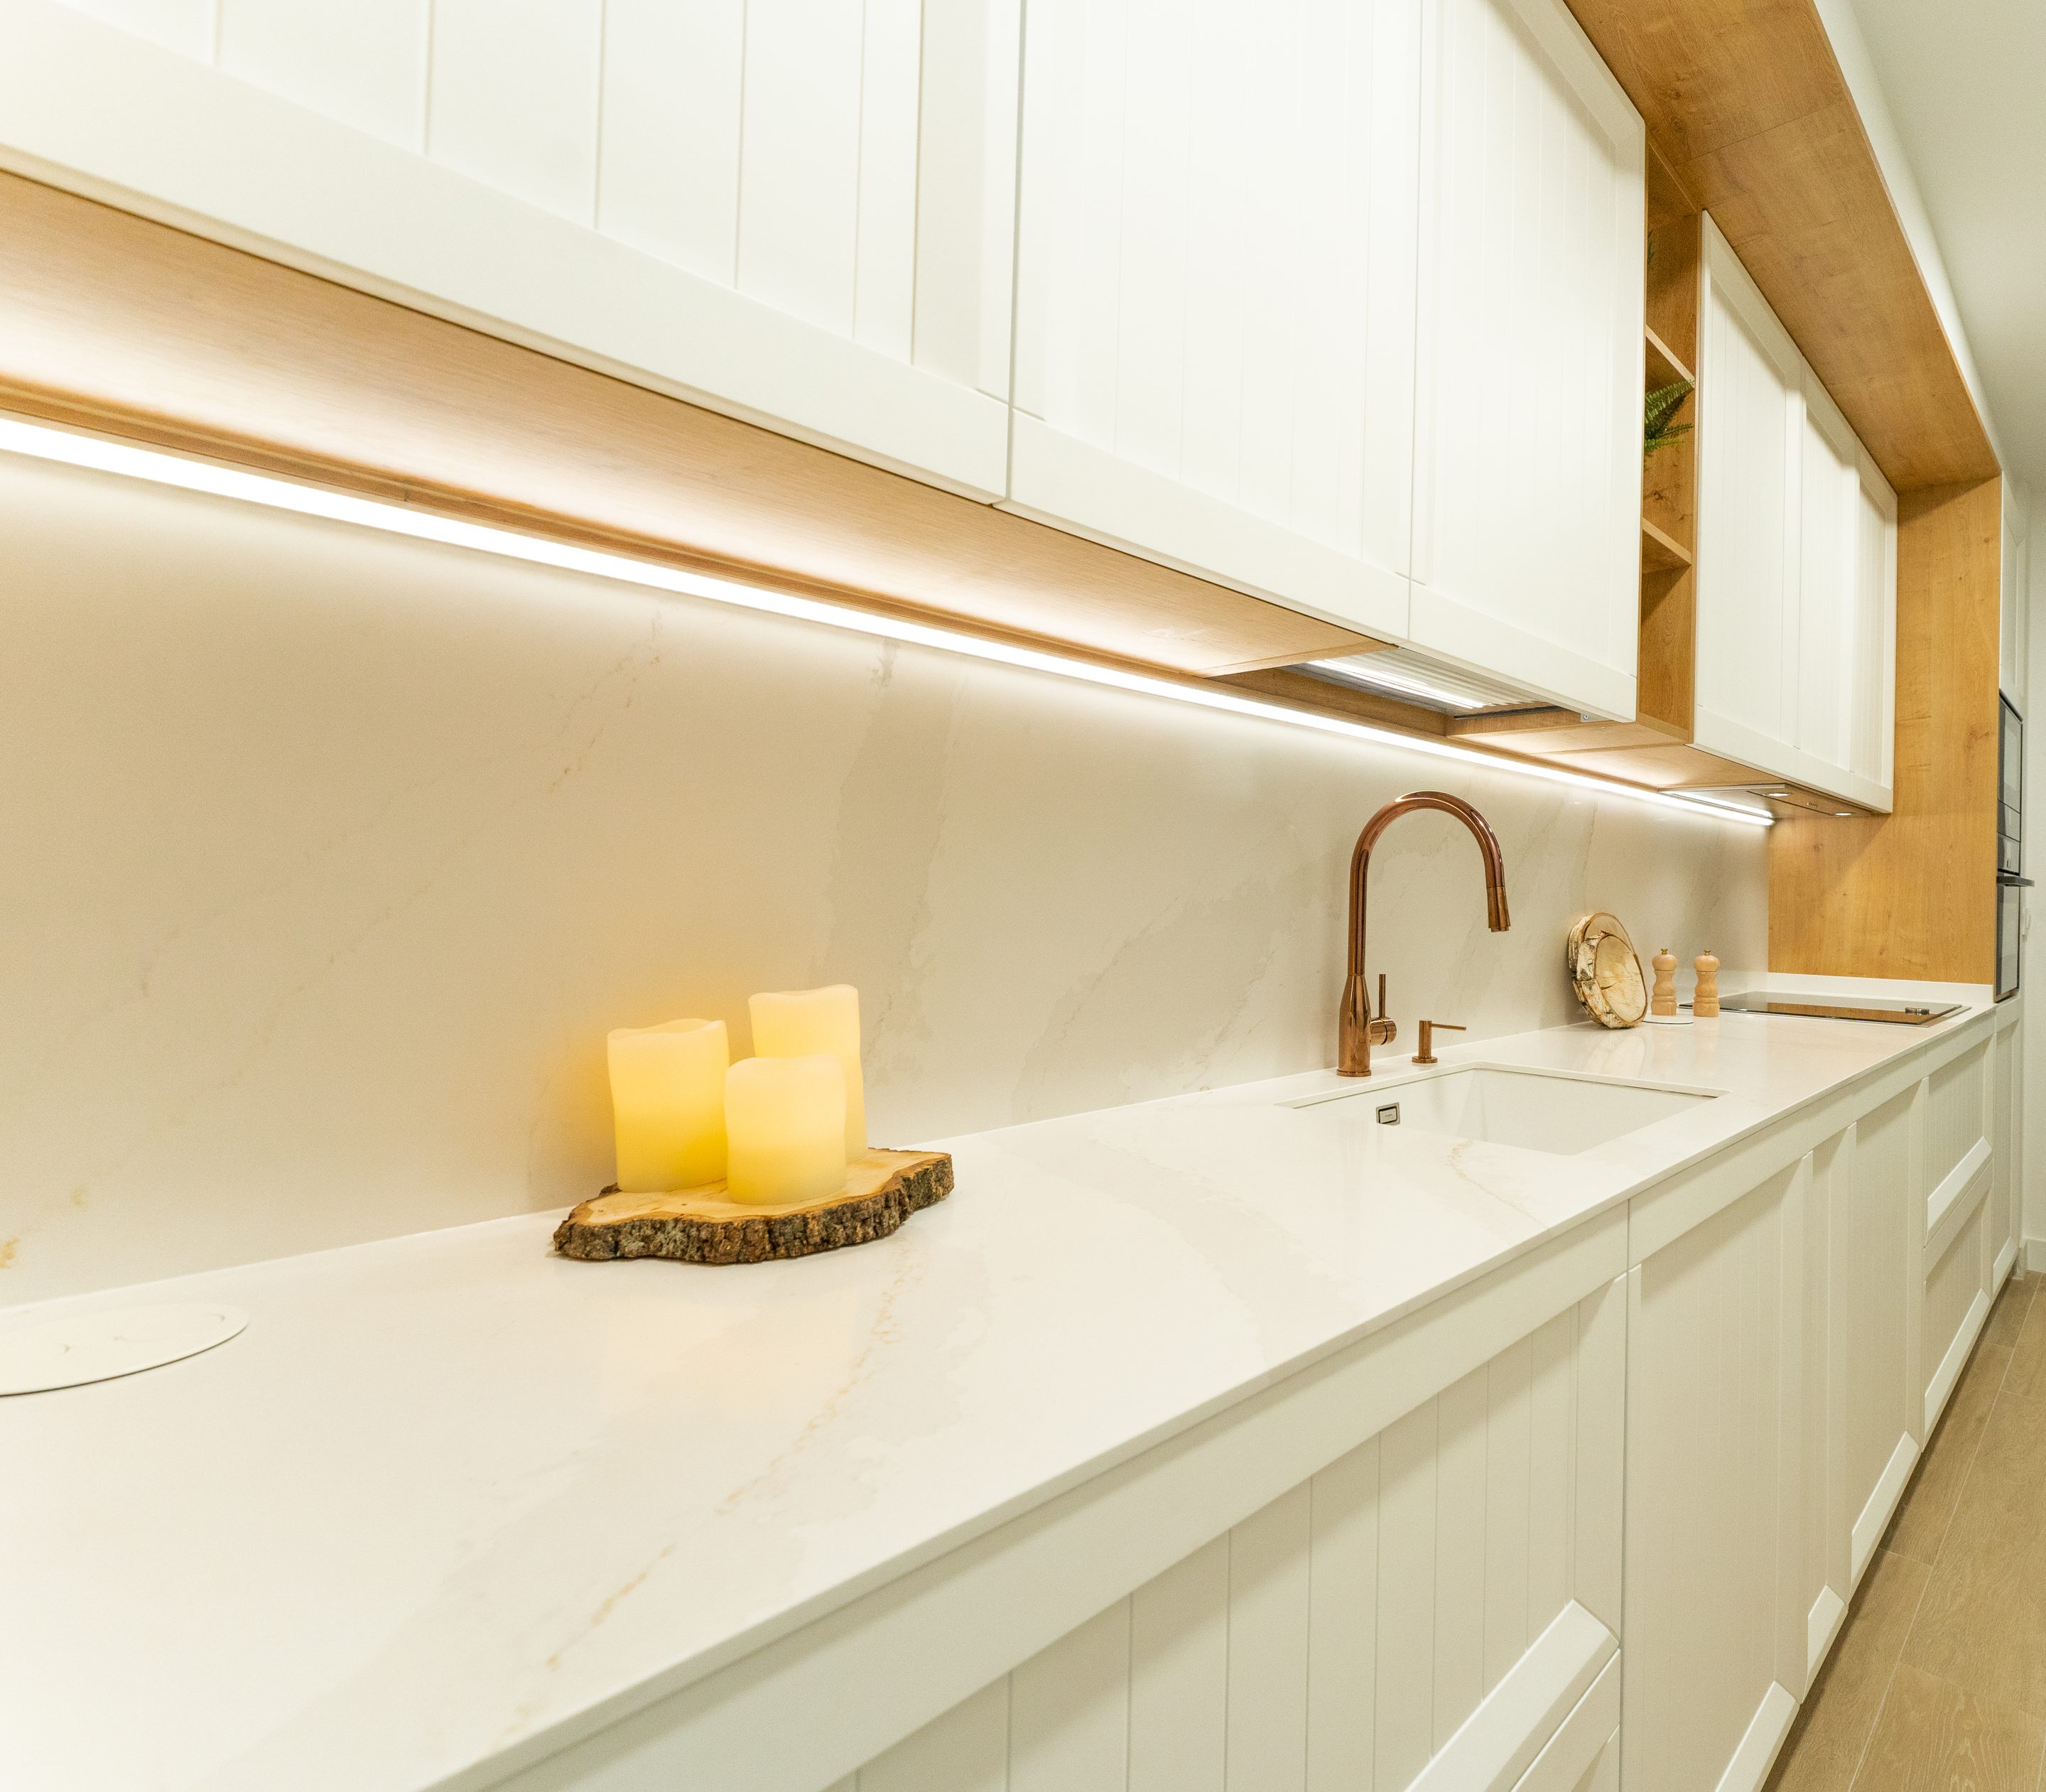 La iluminación bajo los muebles de almacenamiento ofrecen en esta cocina un espacio de sofisticación único.